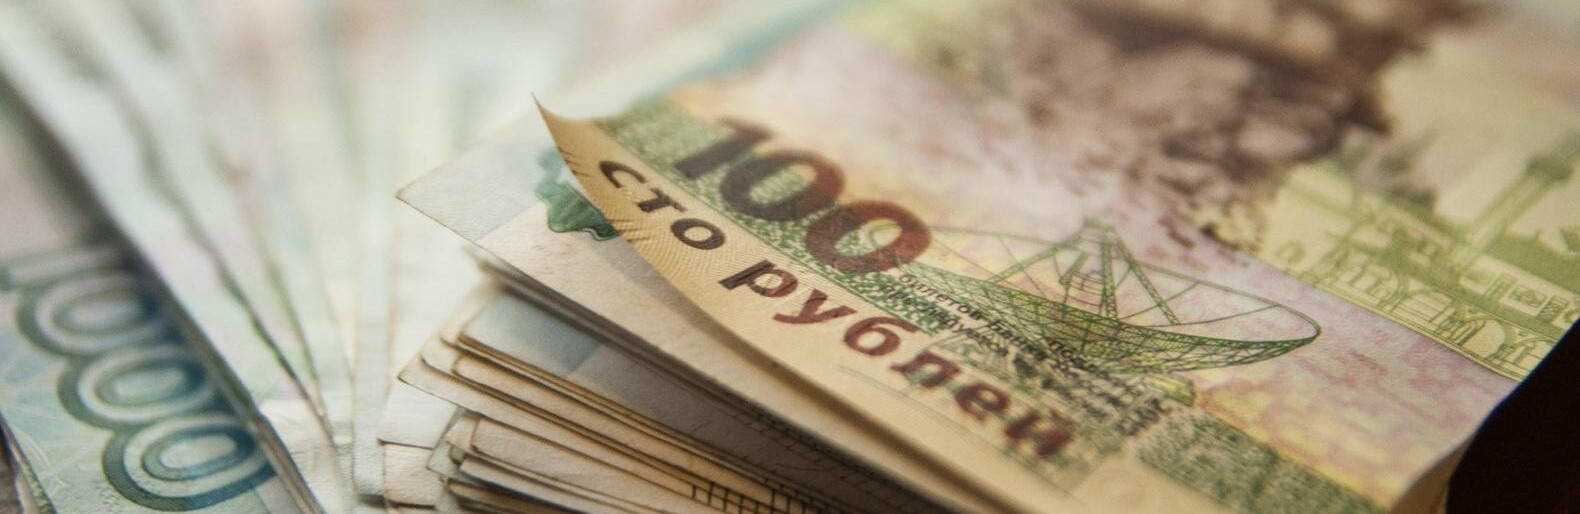 Белгородские власти отремонтируют систему оповещения о ЧС за 400 тыс. рублей